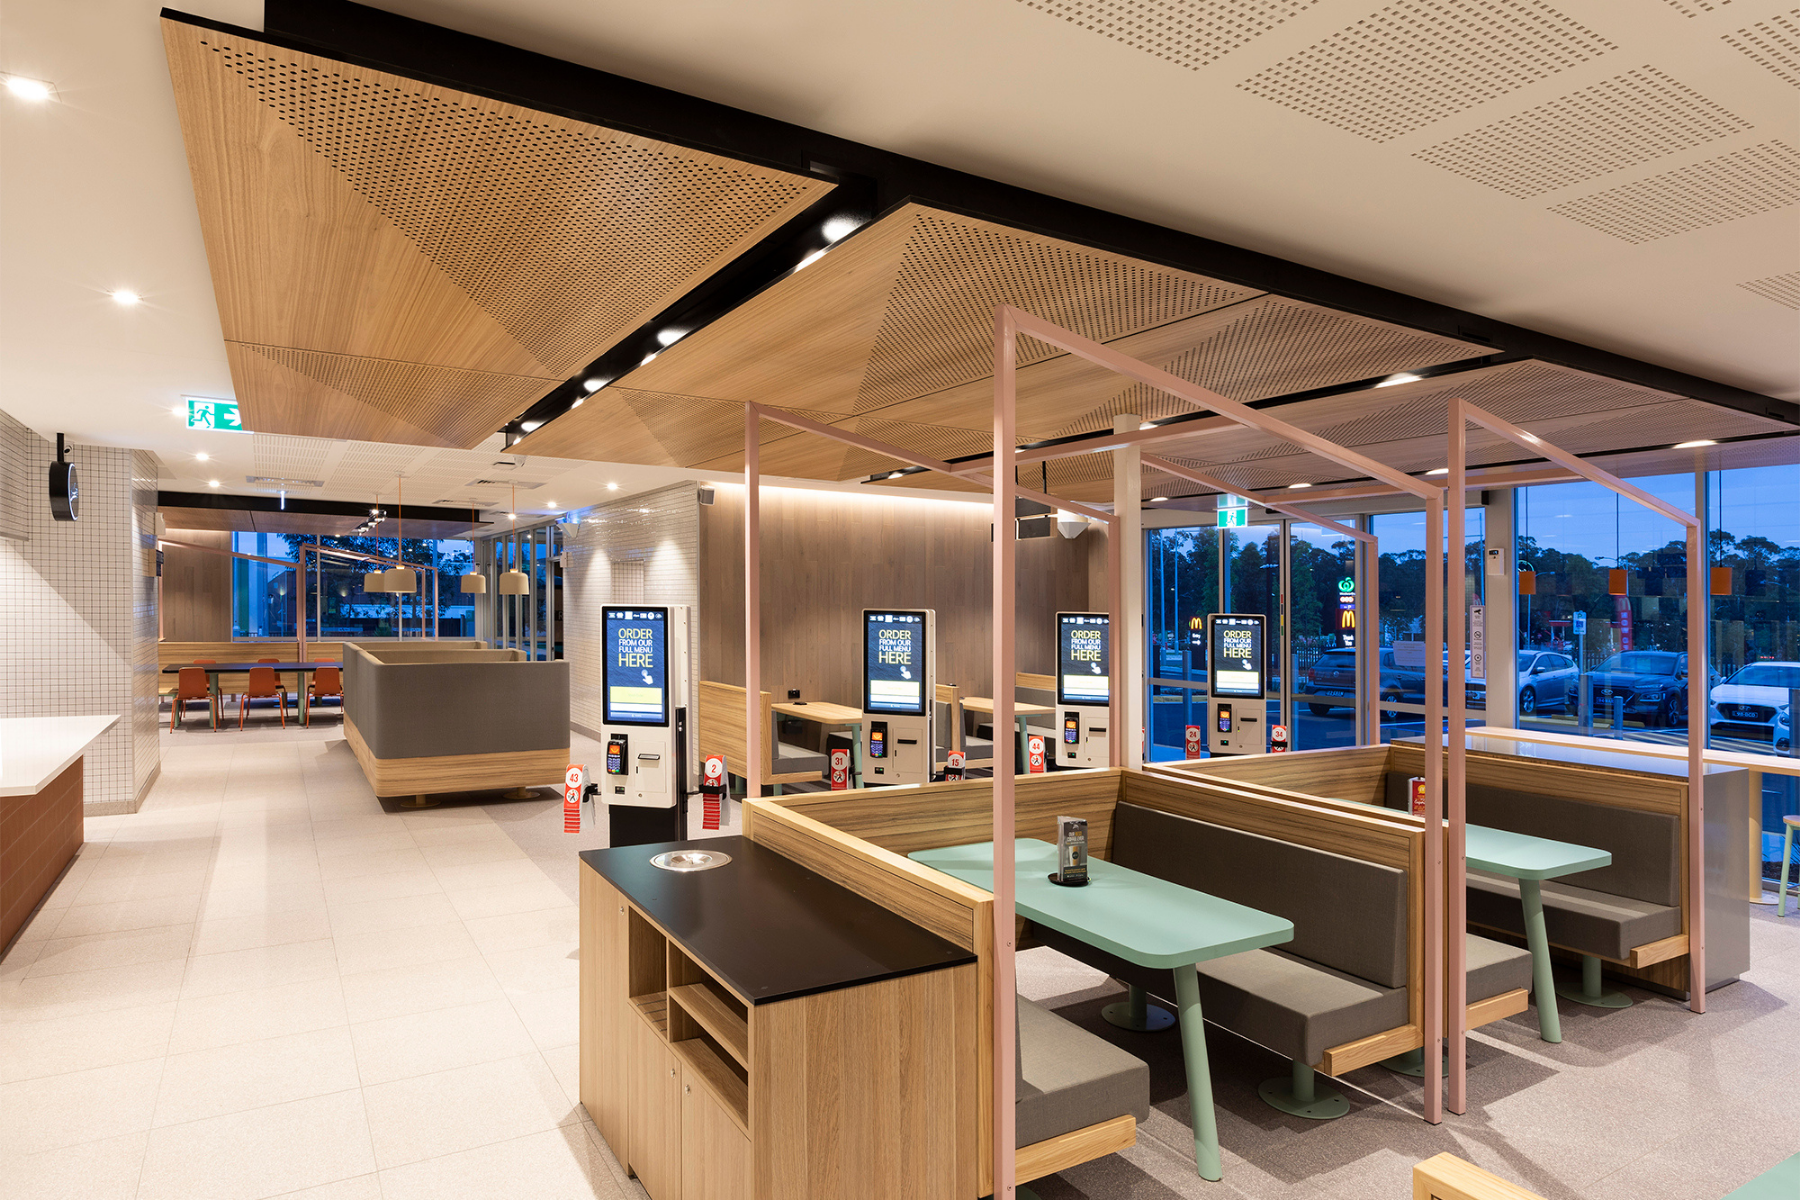 Commercial-grade furniture décor elements - McDonald's